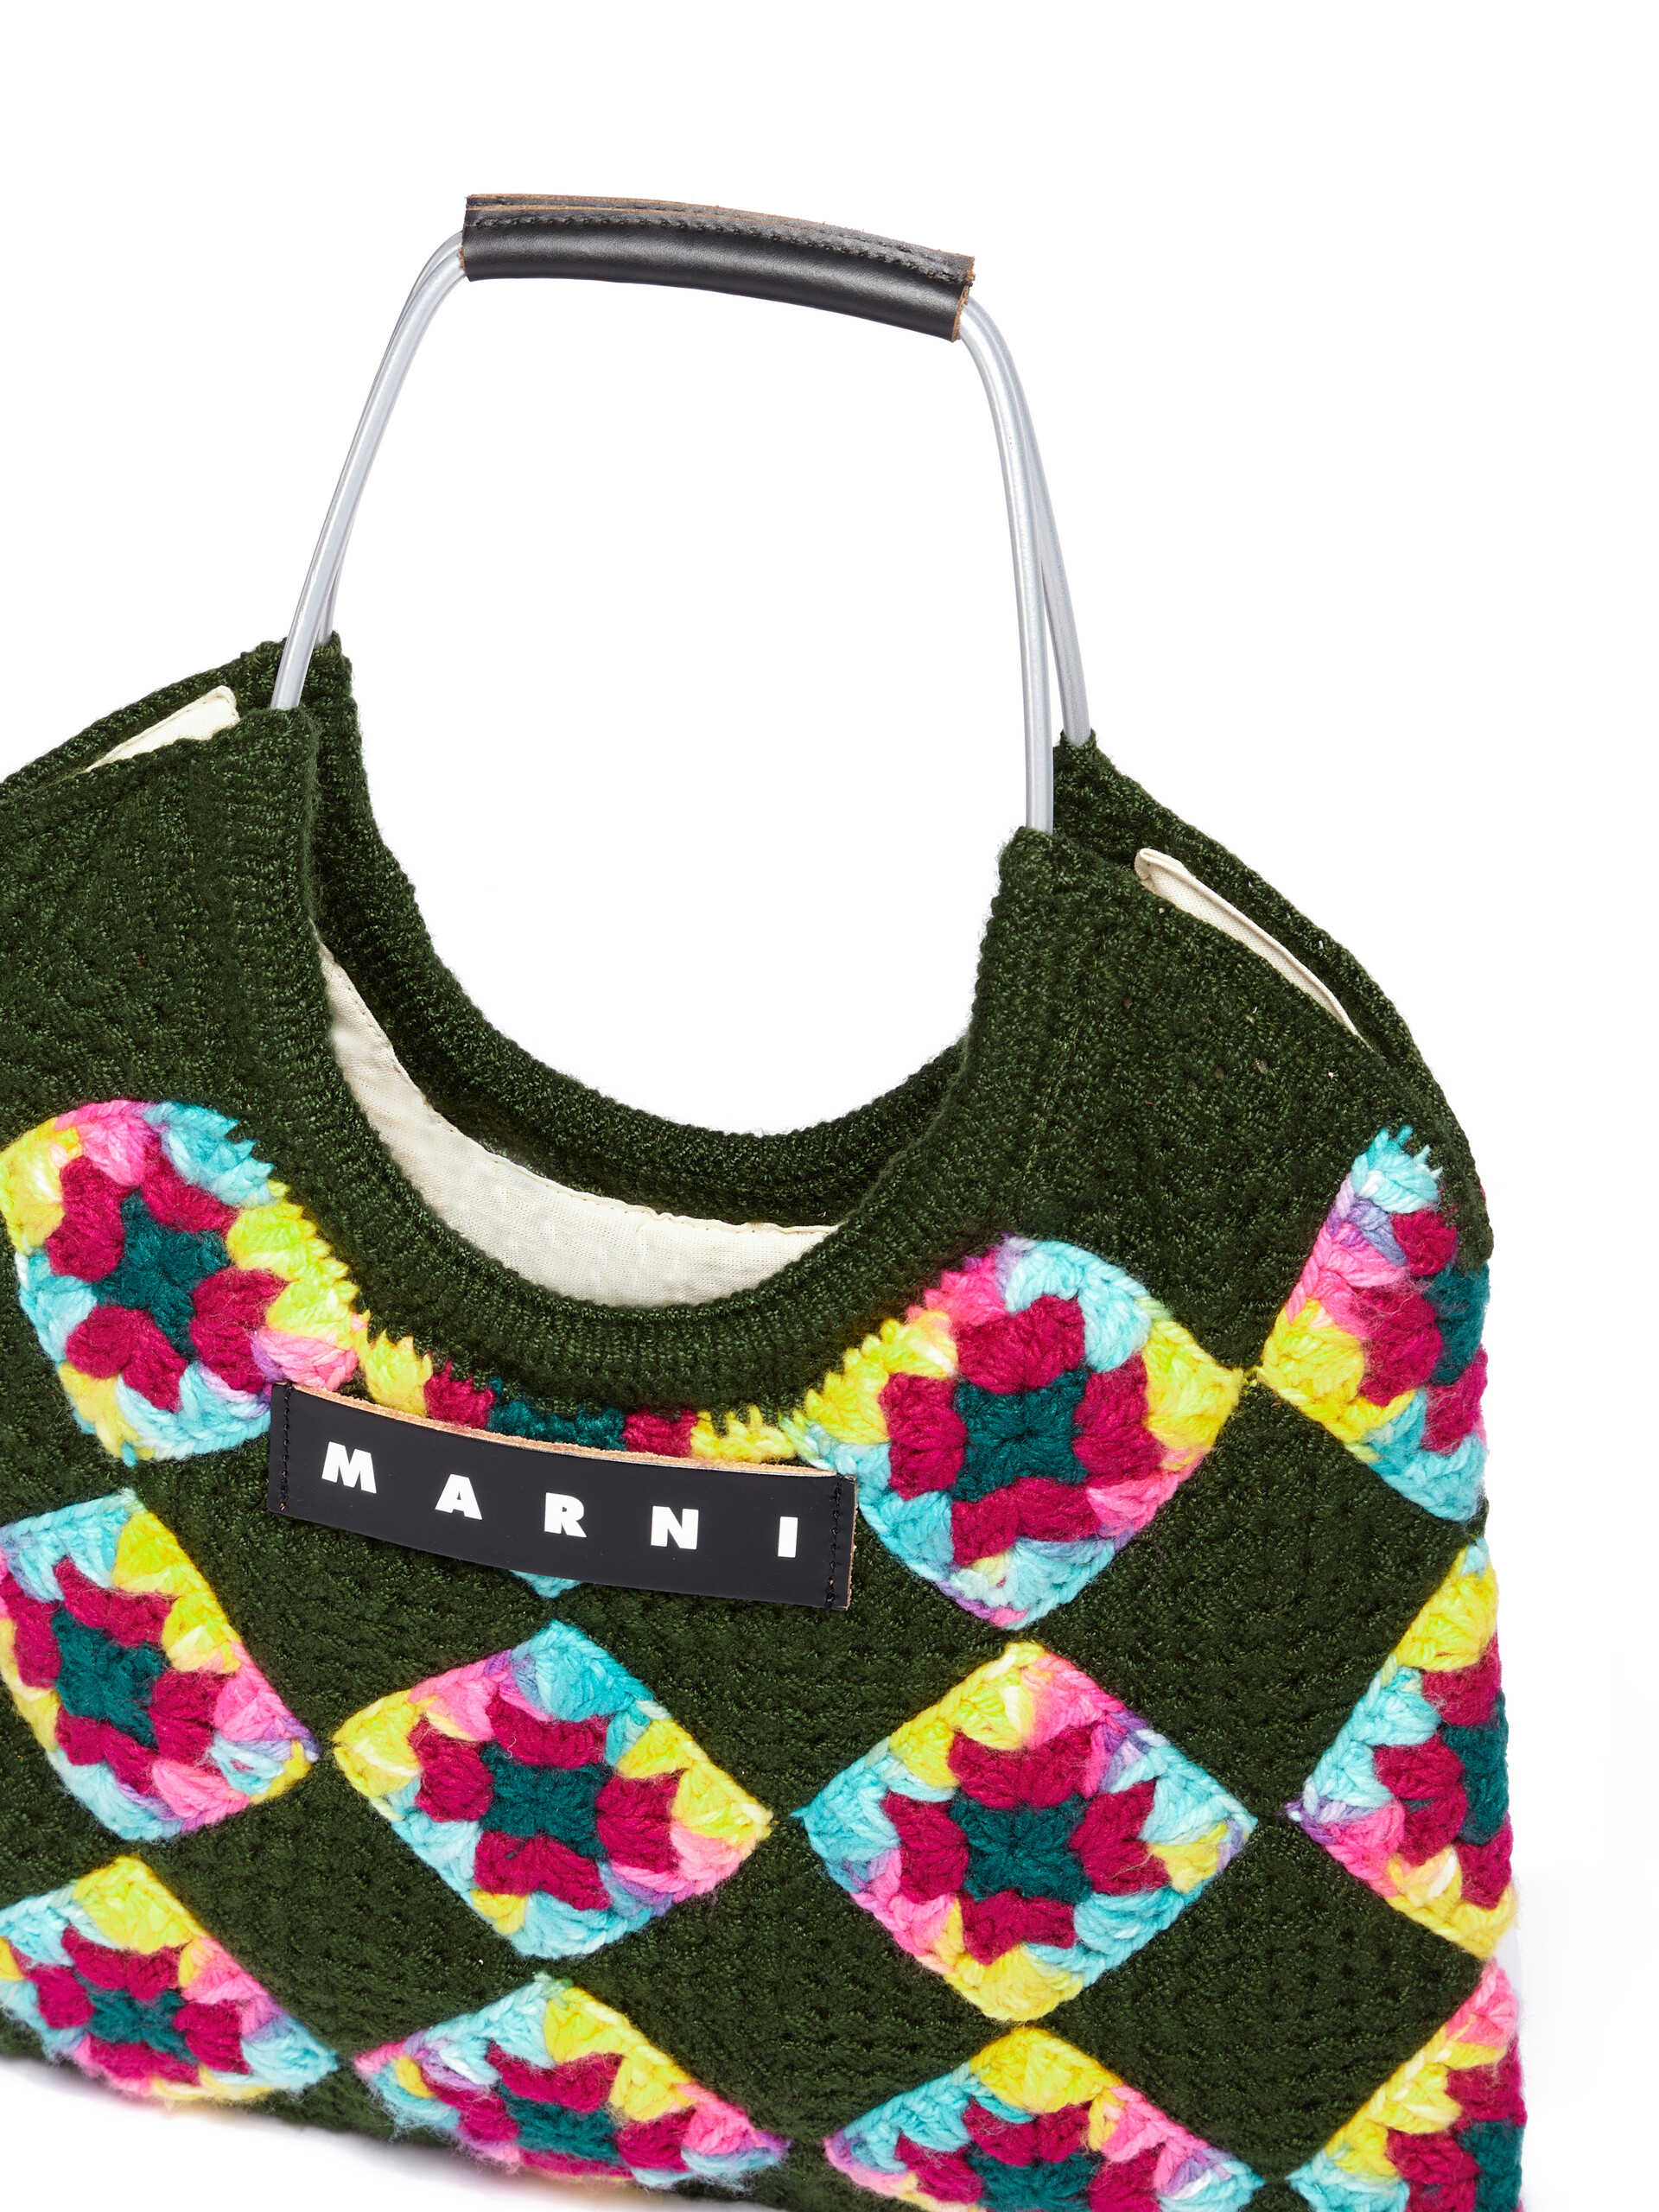 Green Marni Market multicoloured crochet bag - Bags - Image 4